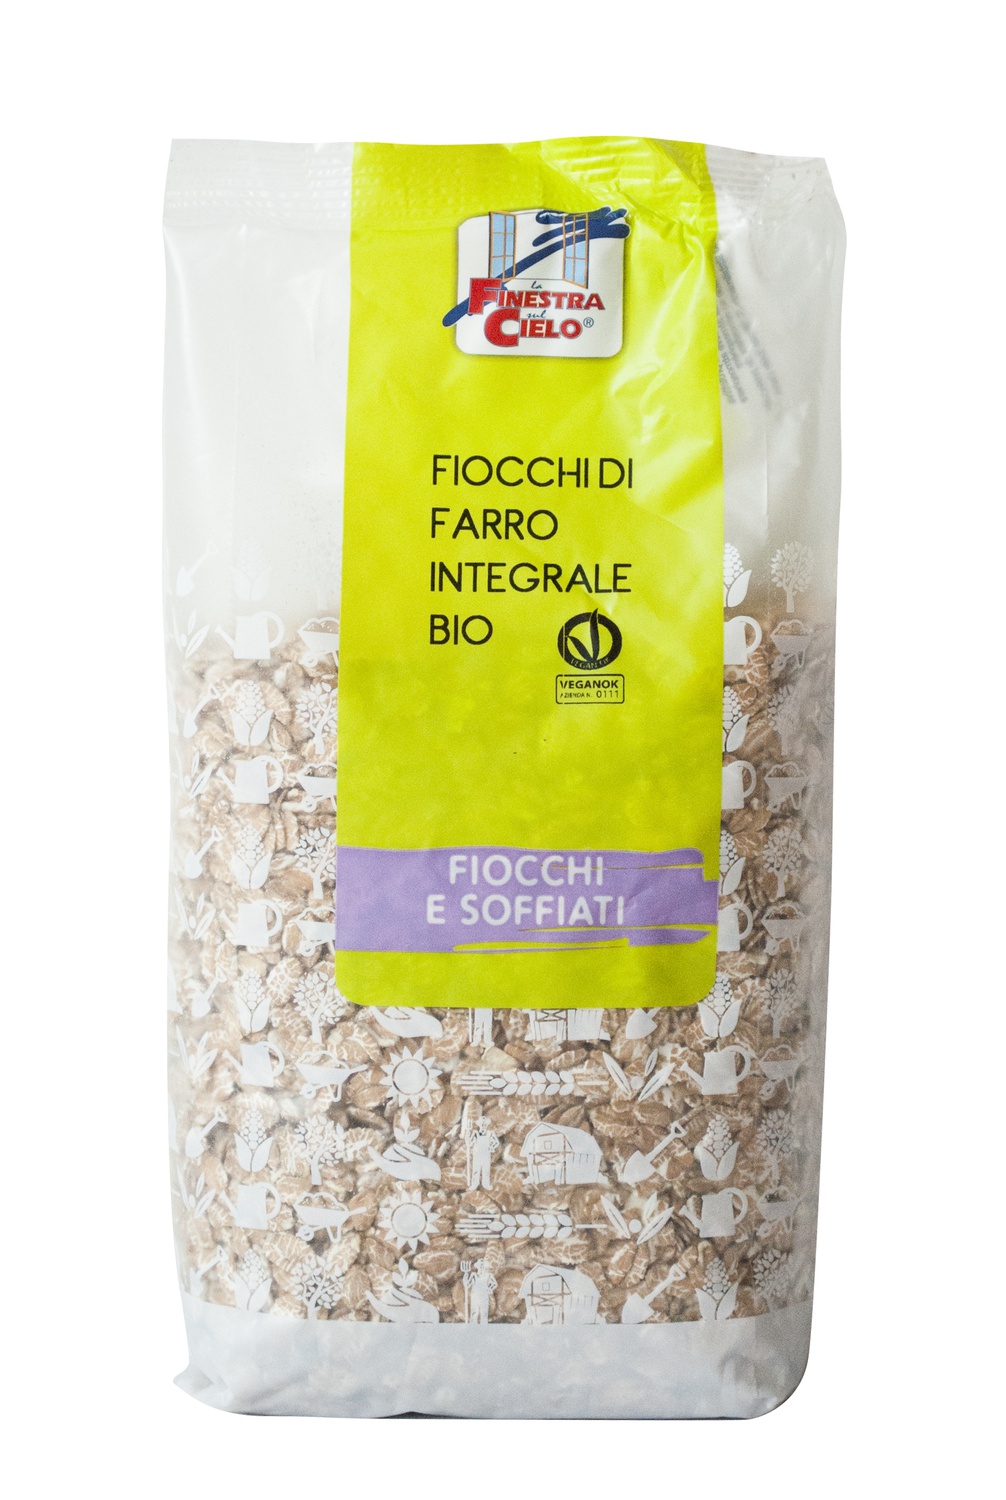 Image of La Finestra Sul Cielo Fiocchi Di Farro Integrale Bio Cereali Per La Colazione 500g